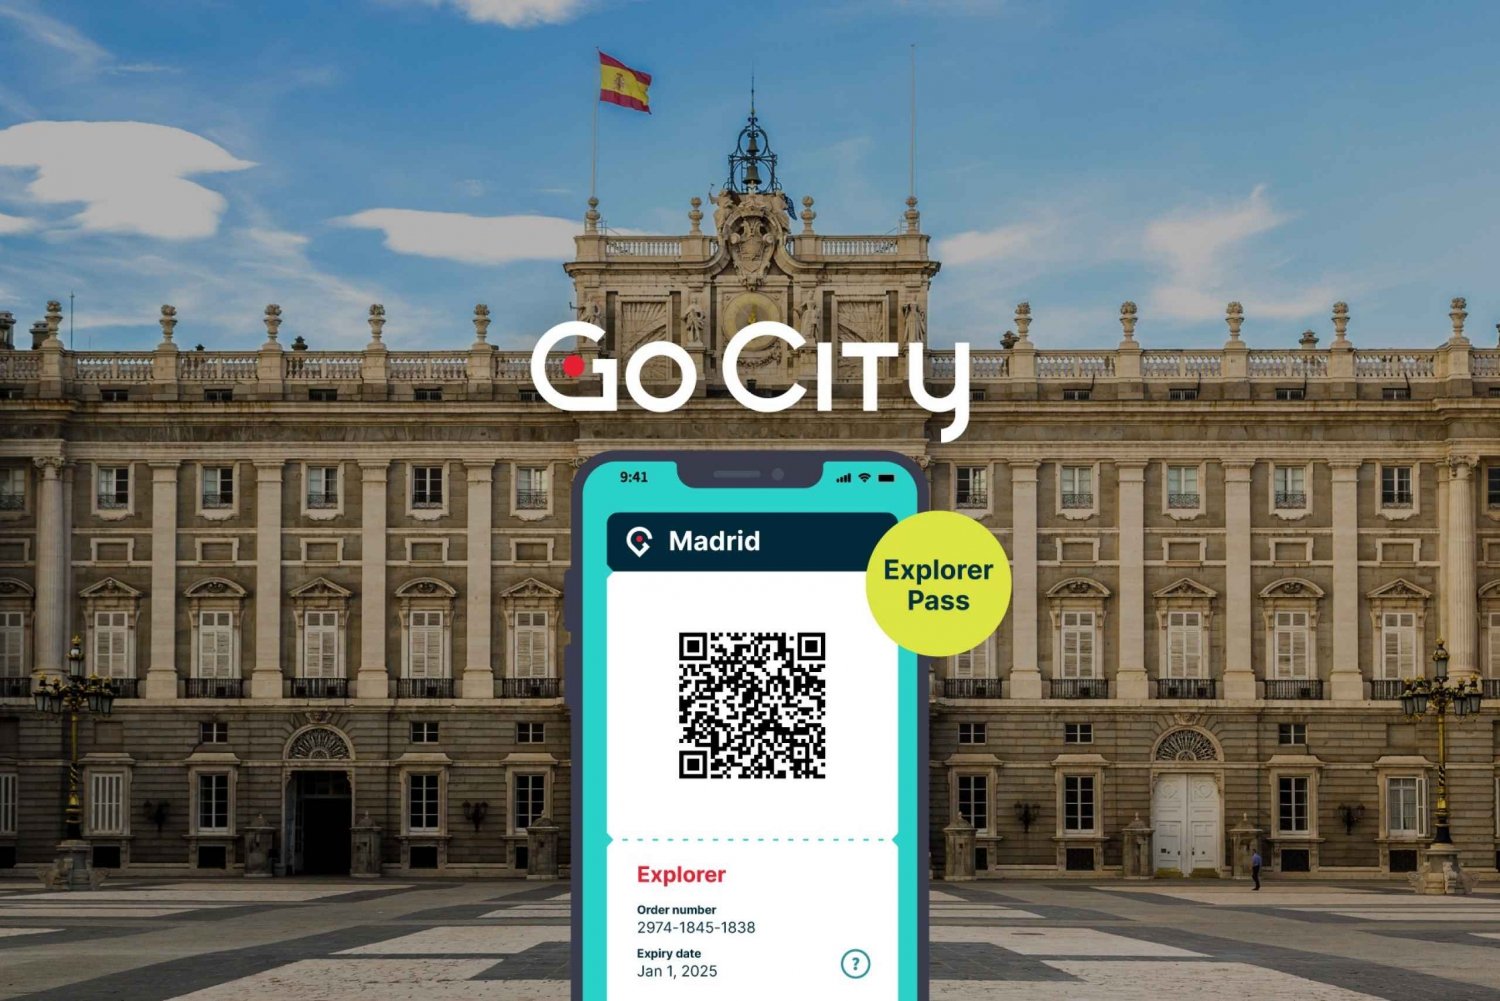 Madrid: Go City Explorer Pass - Elige entre 3 y 7 atracciones